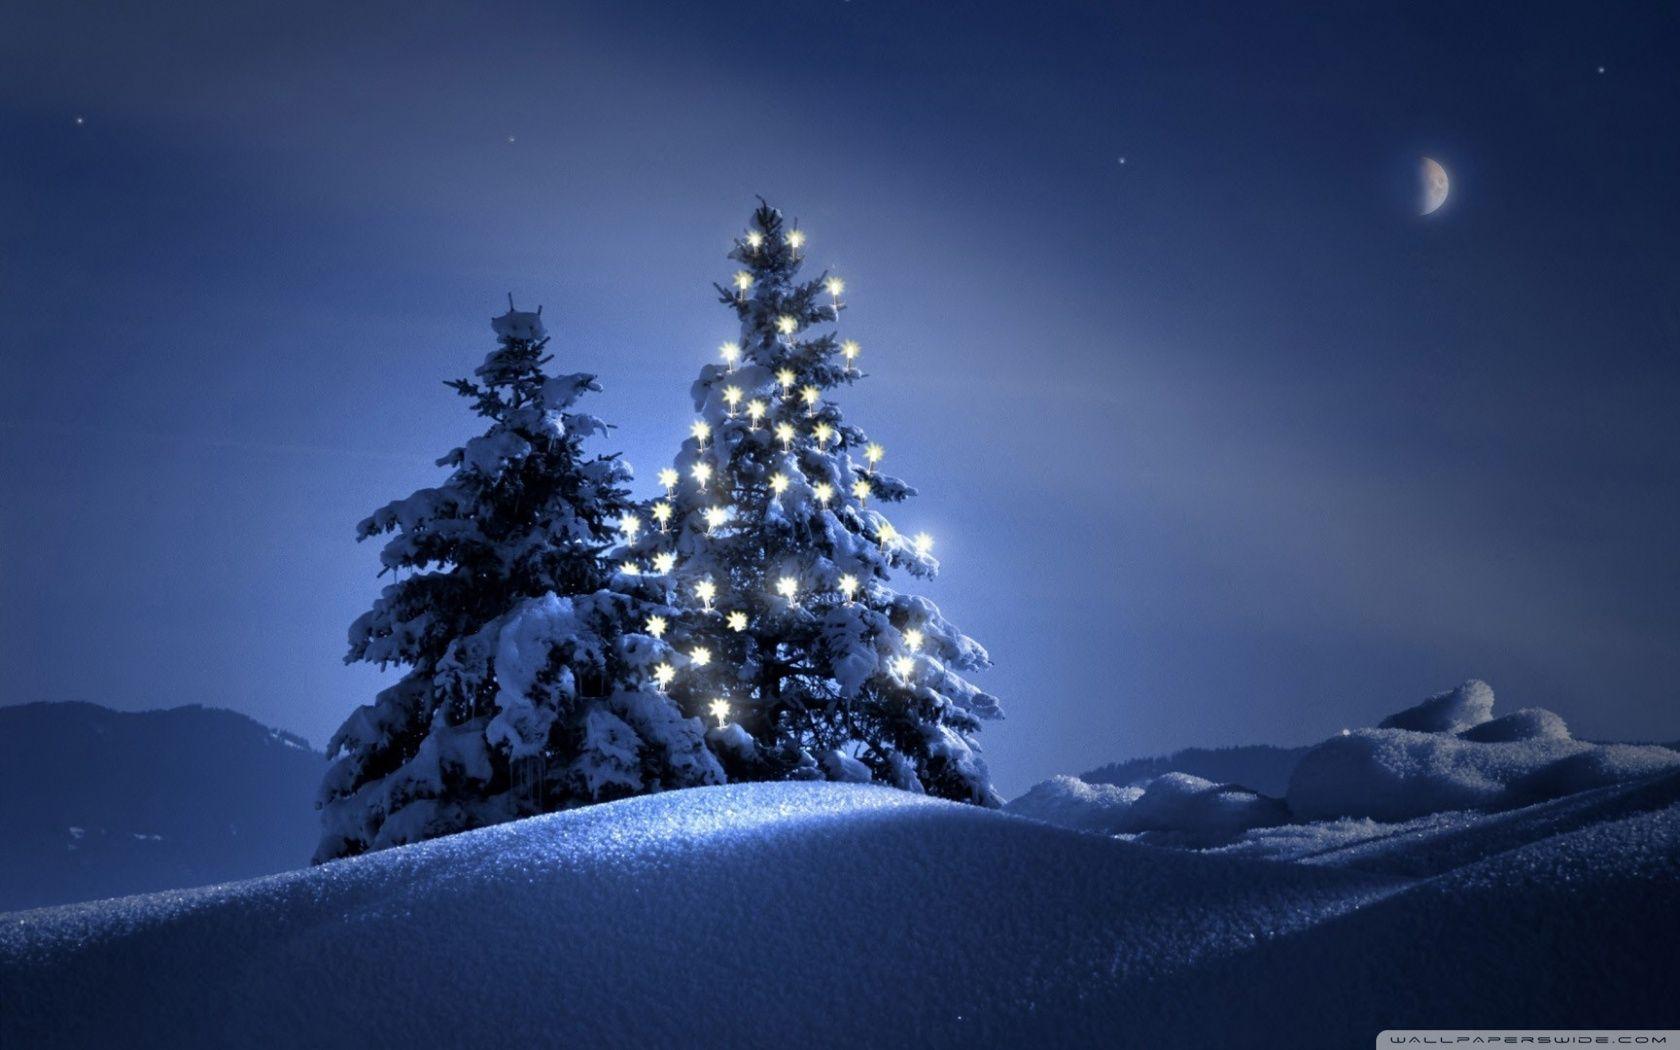 Hình nền đêm Giáng sinh: Một đêm Noel tràn đầy cảm xúc và kỳ diệu chắc chắn sẽ khiến bạn bị cuốn hút. Chào đón mùa lễ hội với bức hình nền Noel đêm Giáng sinh, bạn sẽ cảm nhận được sự ấm áp và hoà mình vào không khí ngày lễ trọng đại này.